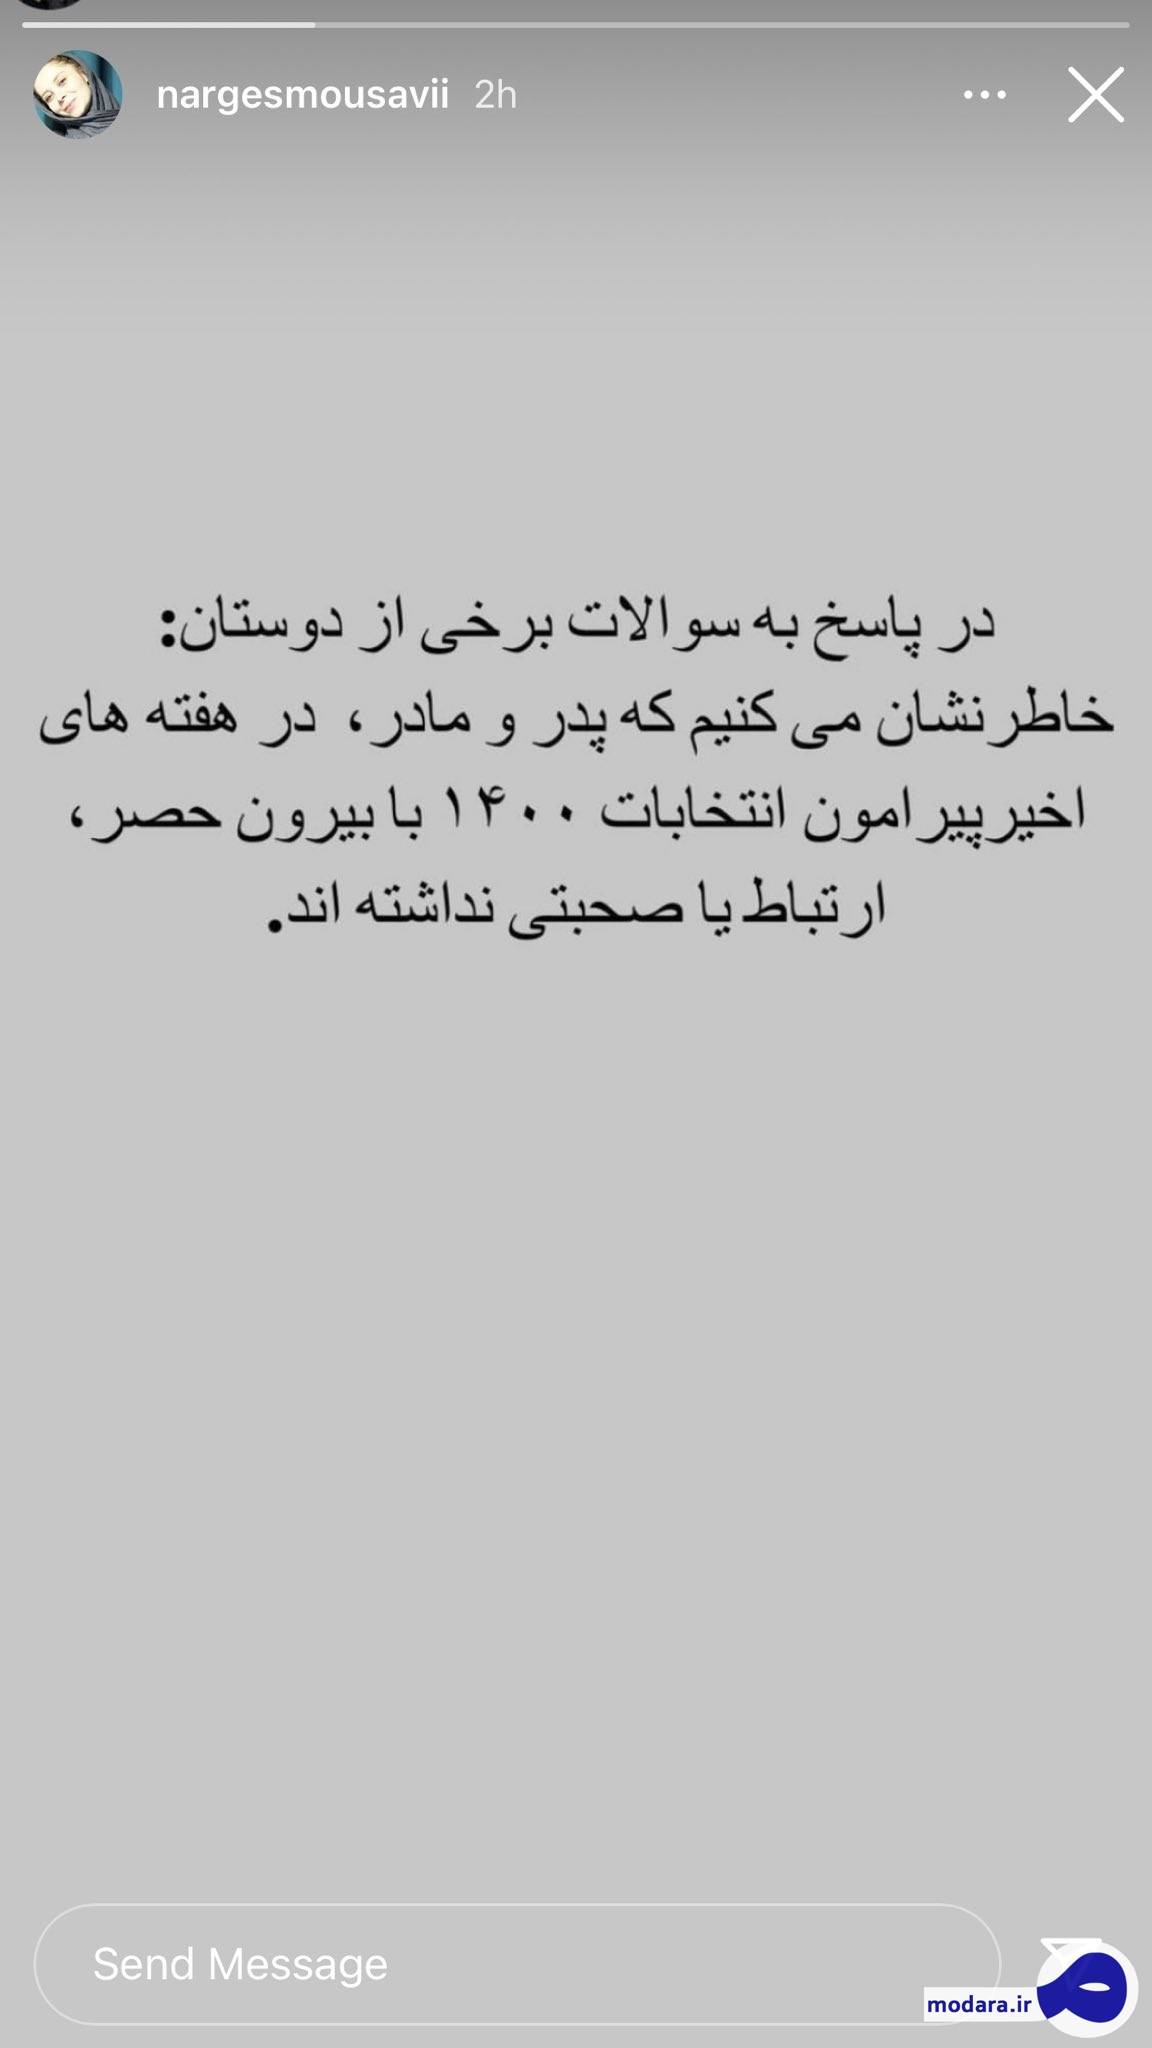 میر حسین موسوی پیرامون انتخابات۱۴۰۰ هیچ صحبتی نداشته اند